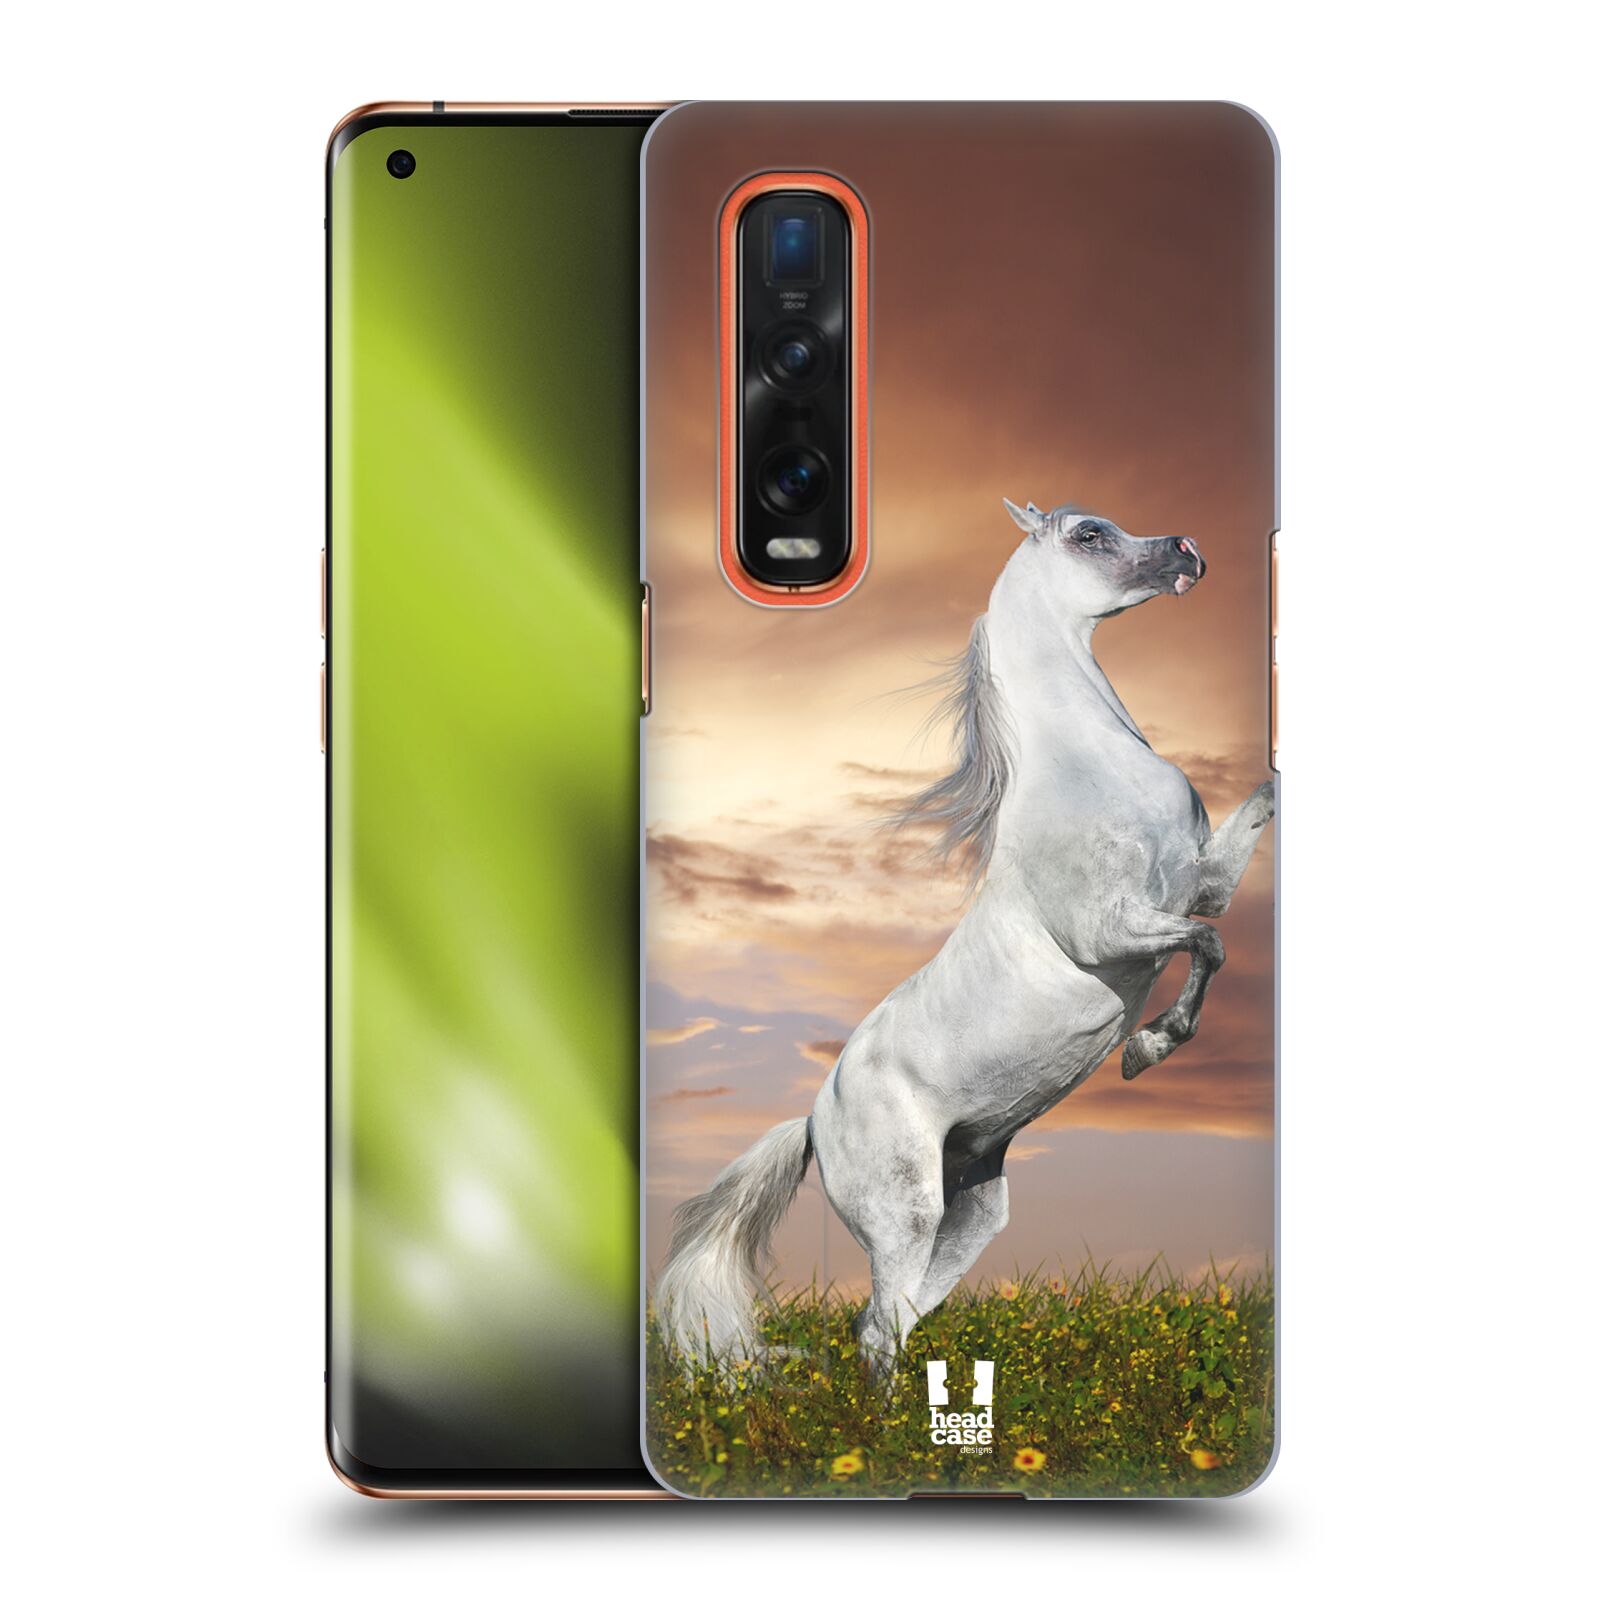 Zadní obal pro mobil Oppo Find X2 PRO - HEAD CASE - Svět zvířat divoký kůň